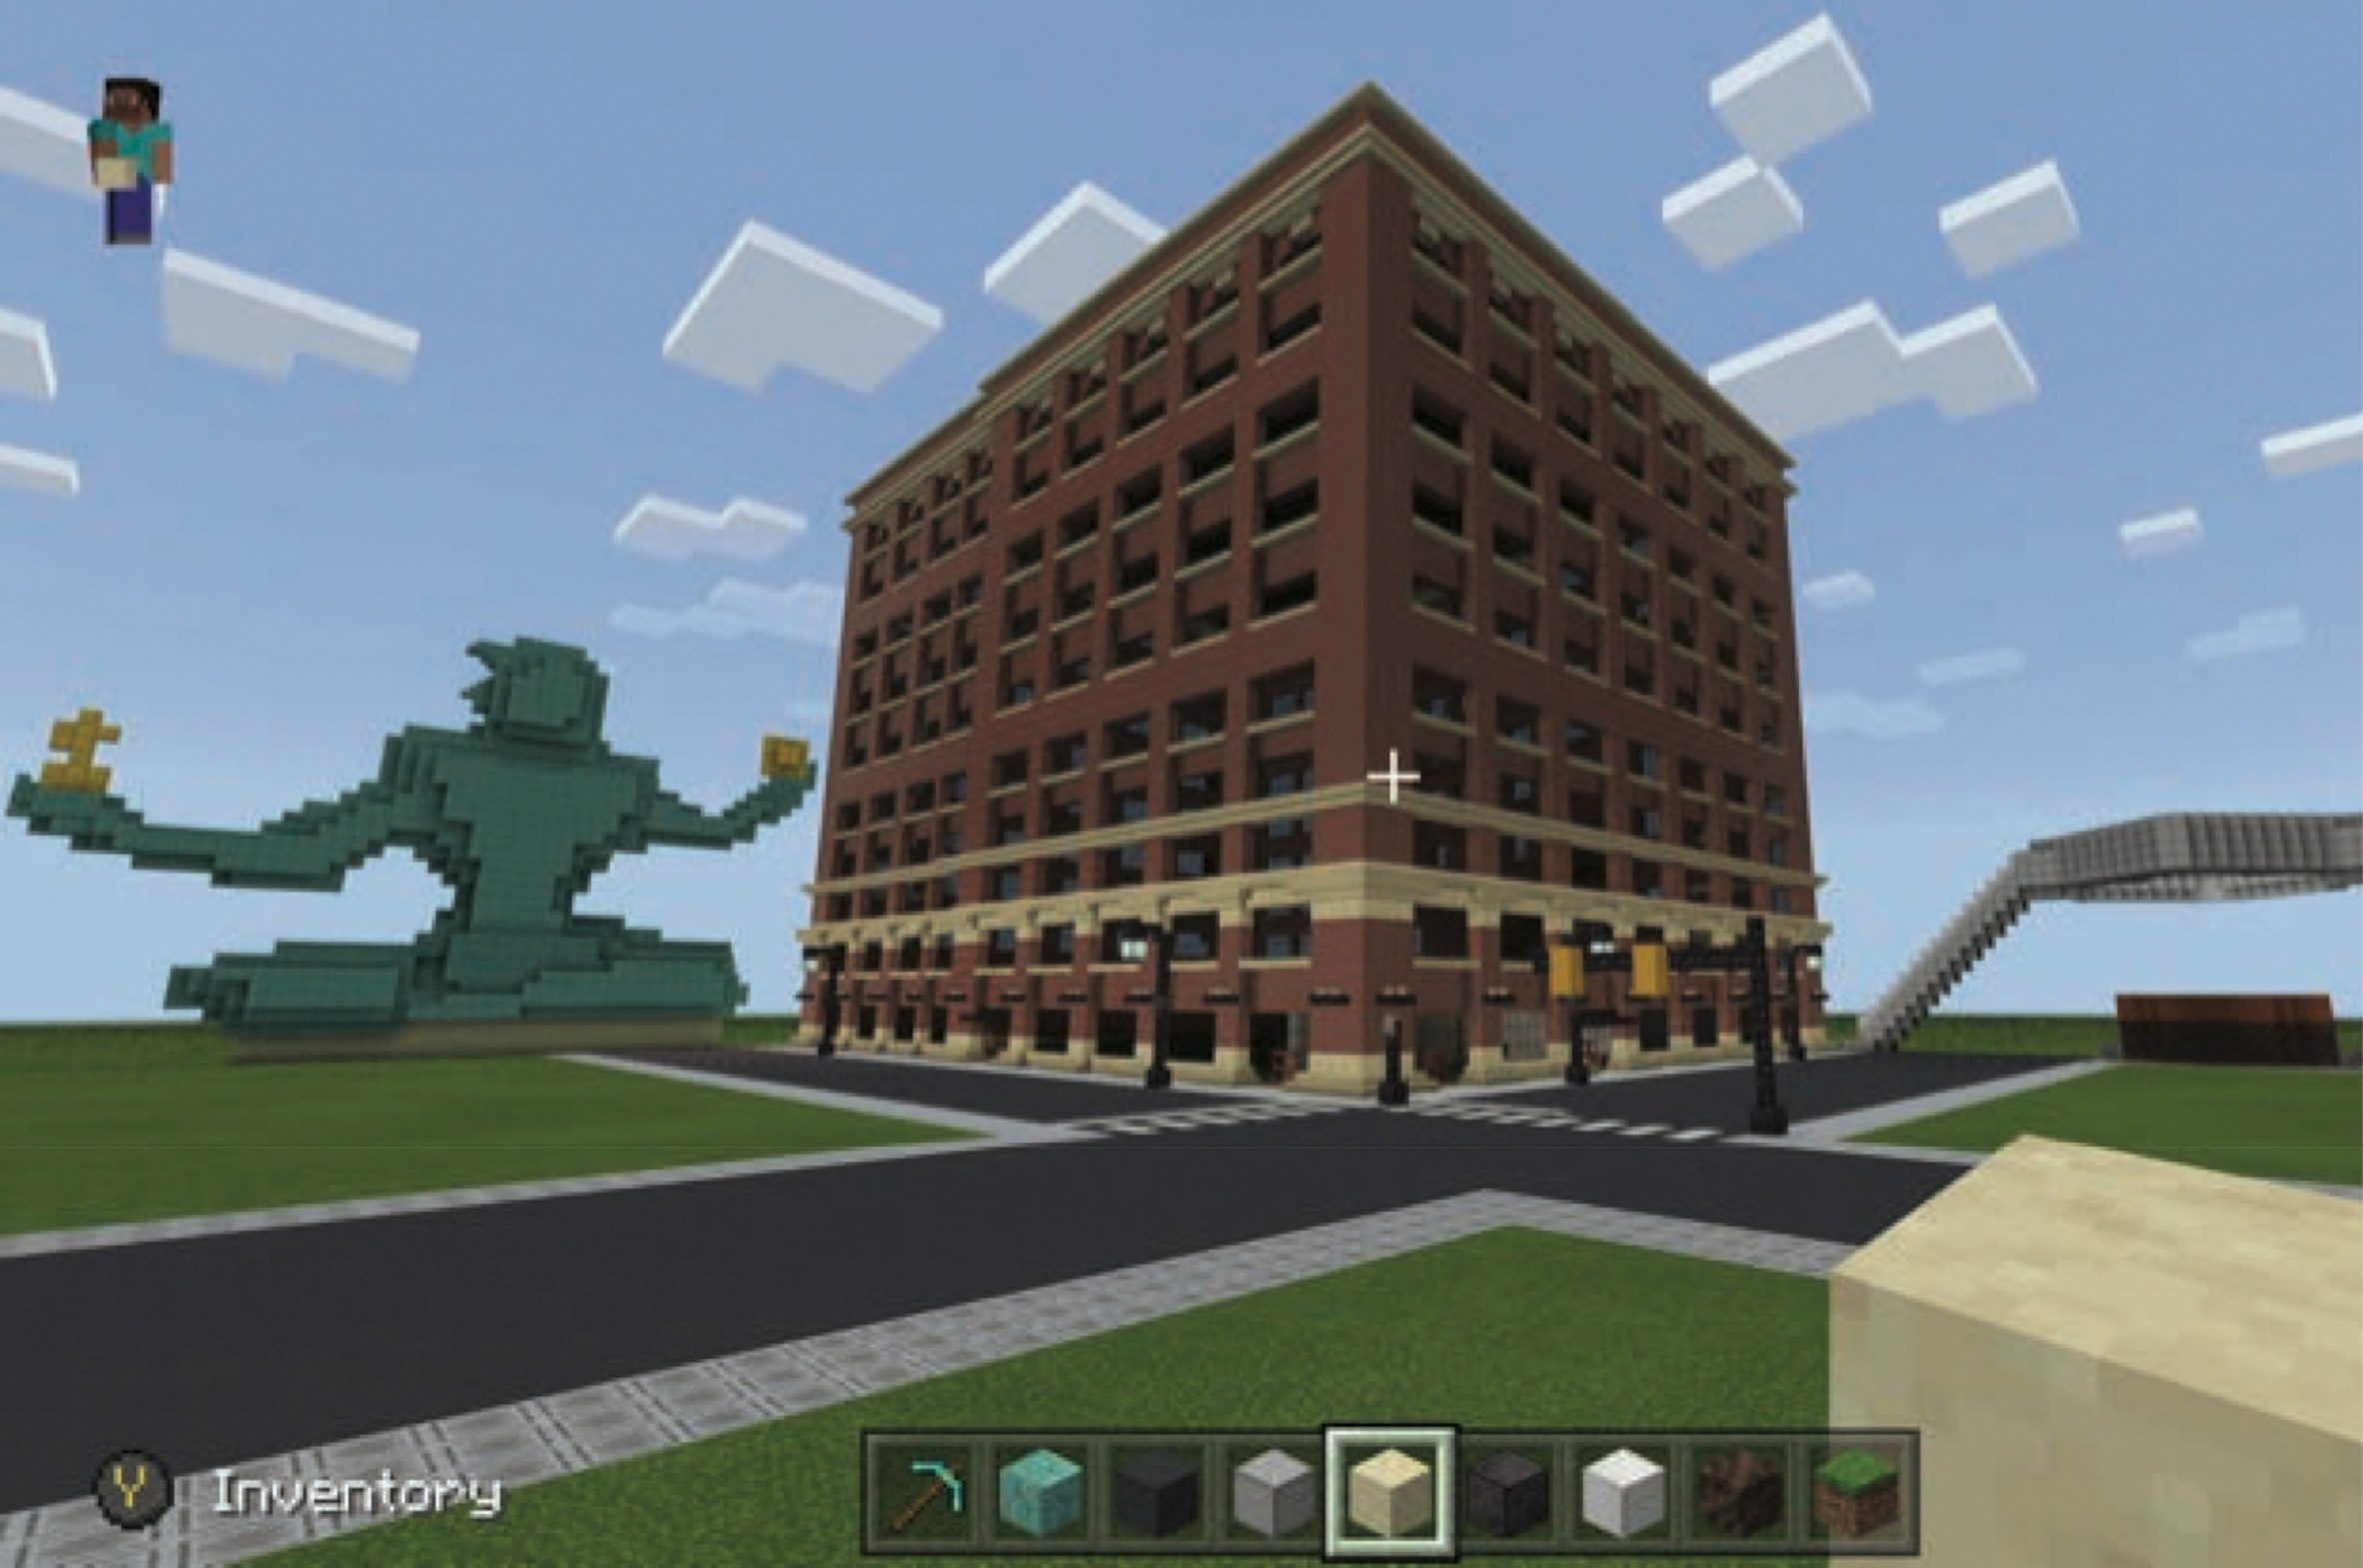 WPP Detroit campus in Minecraft